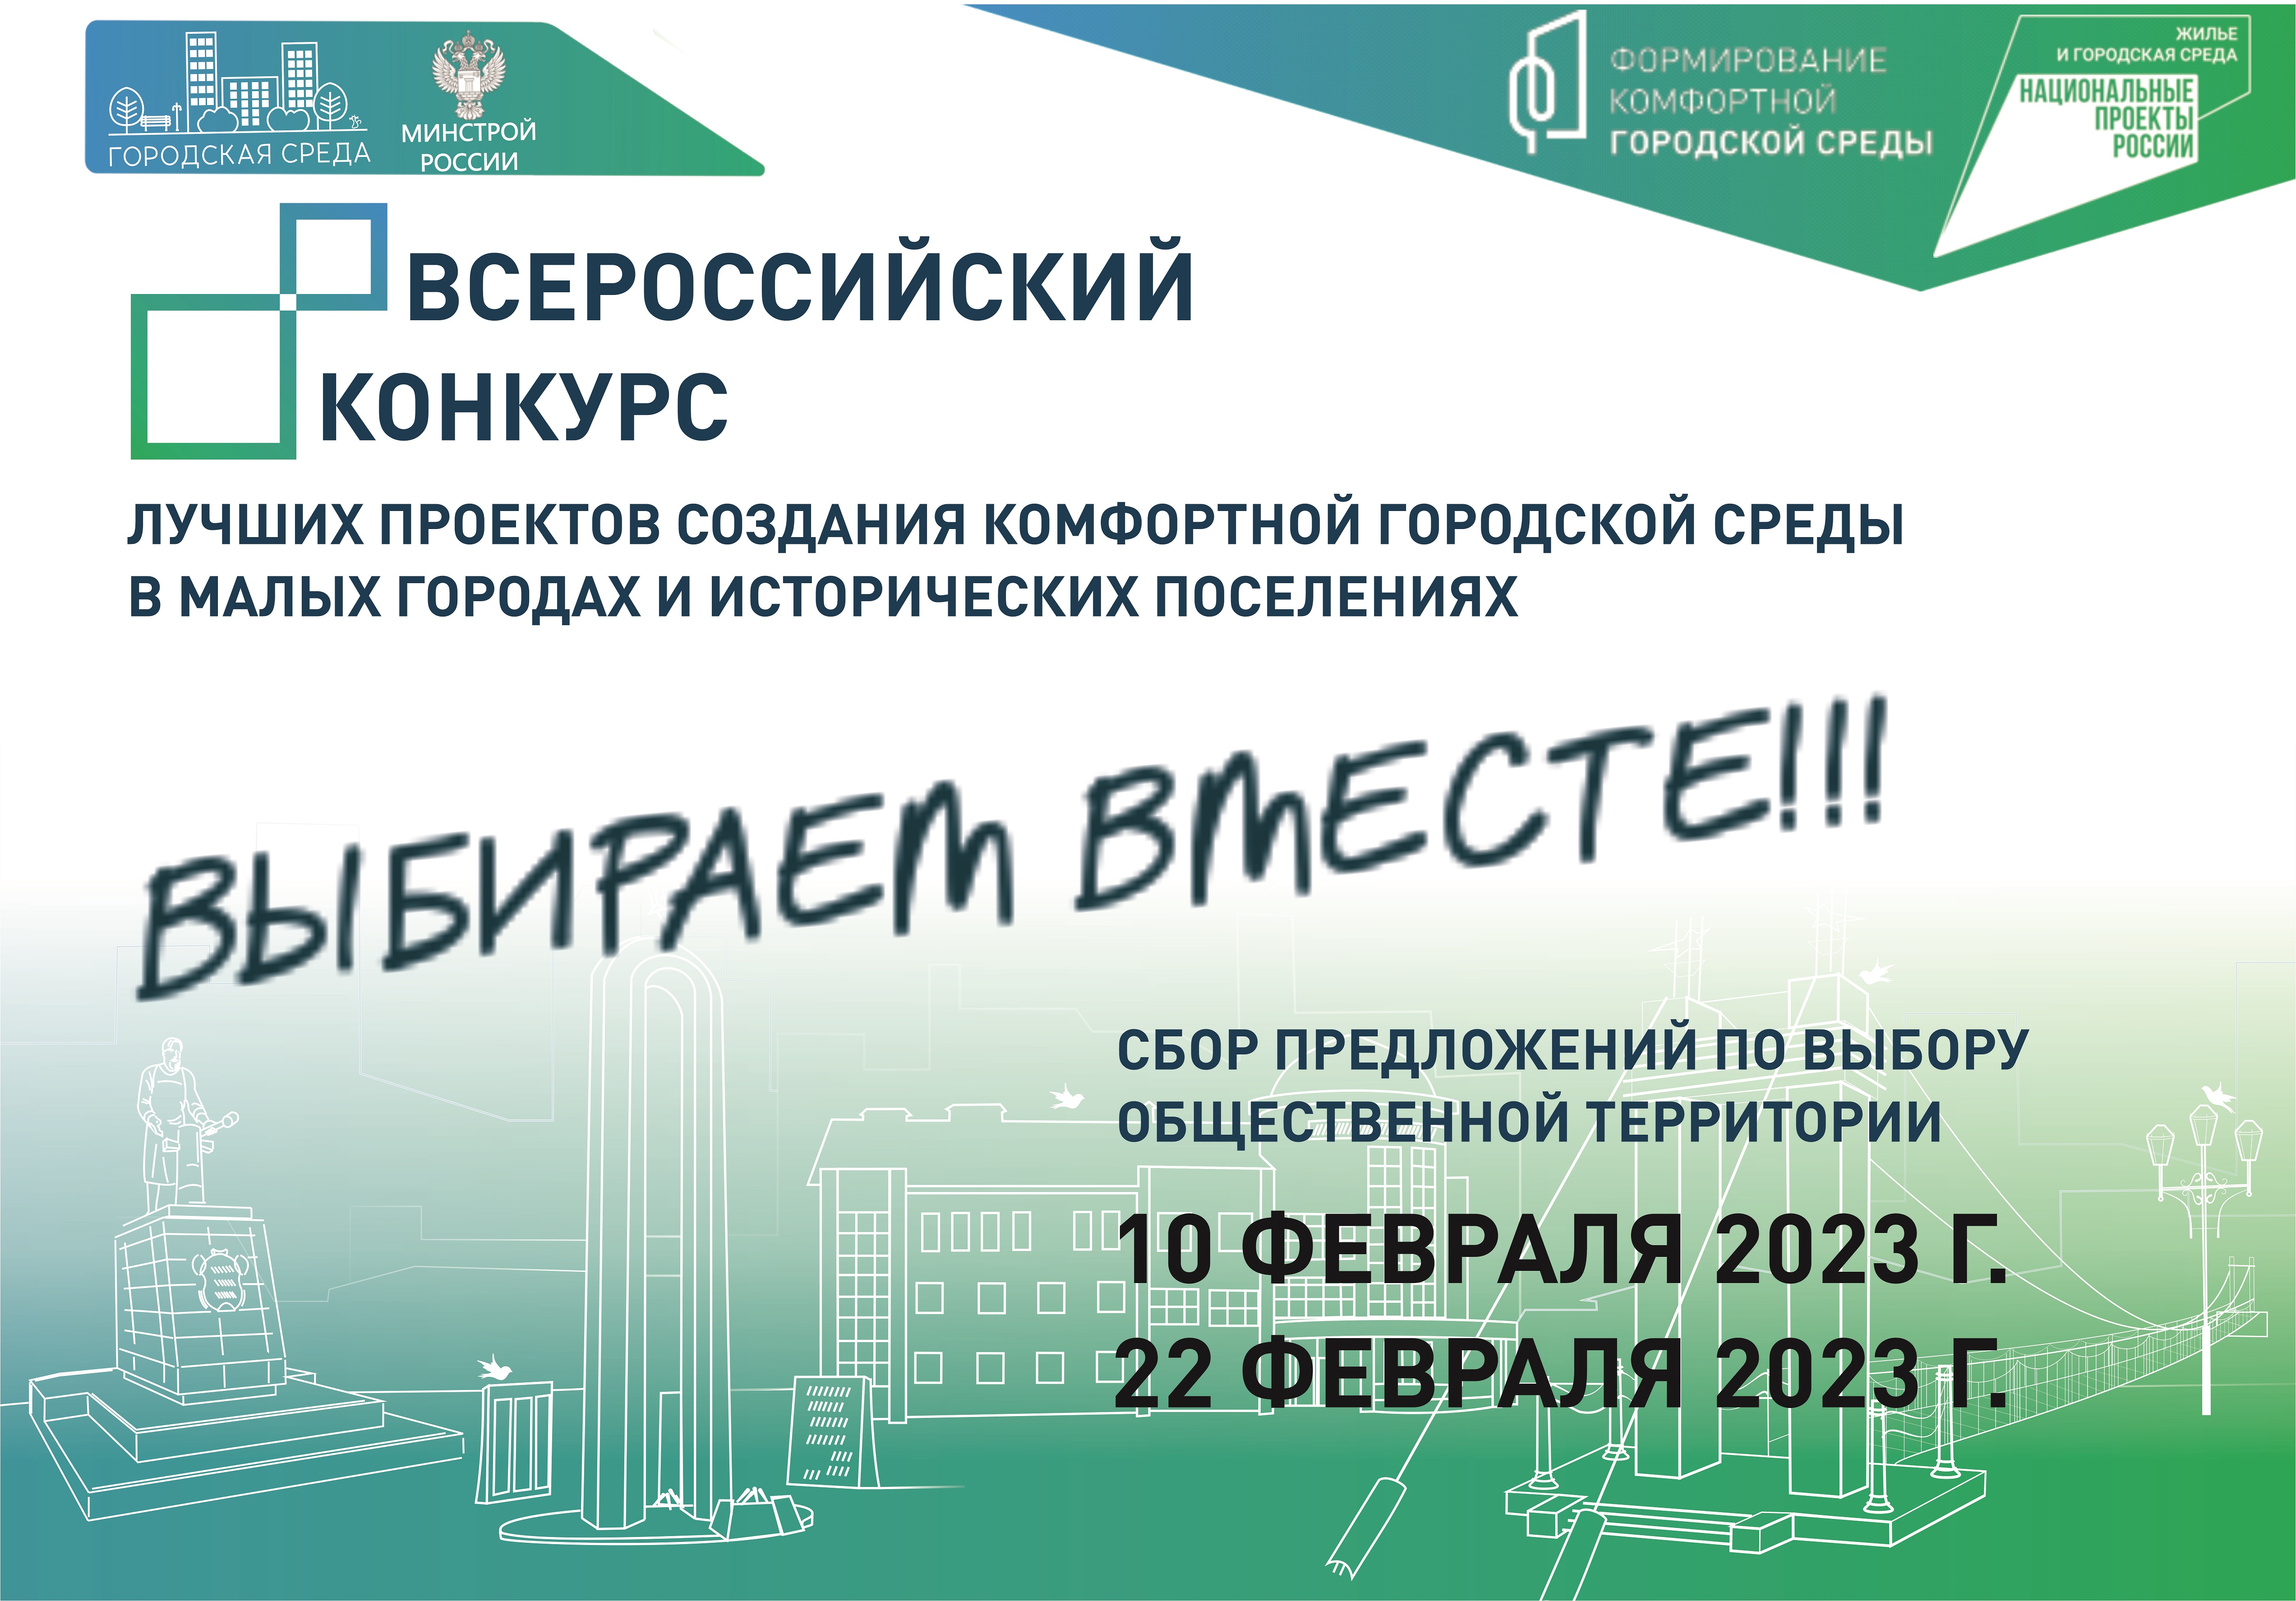 Уважаемые жители Алексеевского городского округа, предлагаем вам принять участие в опросе по выбору общественной территории для участия во Всероссийском конкурсе лучших проектов создания комфортной городской среды в 2023 году